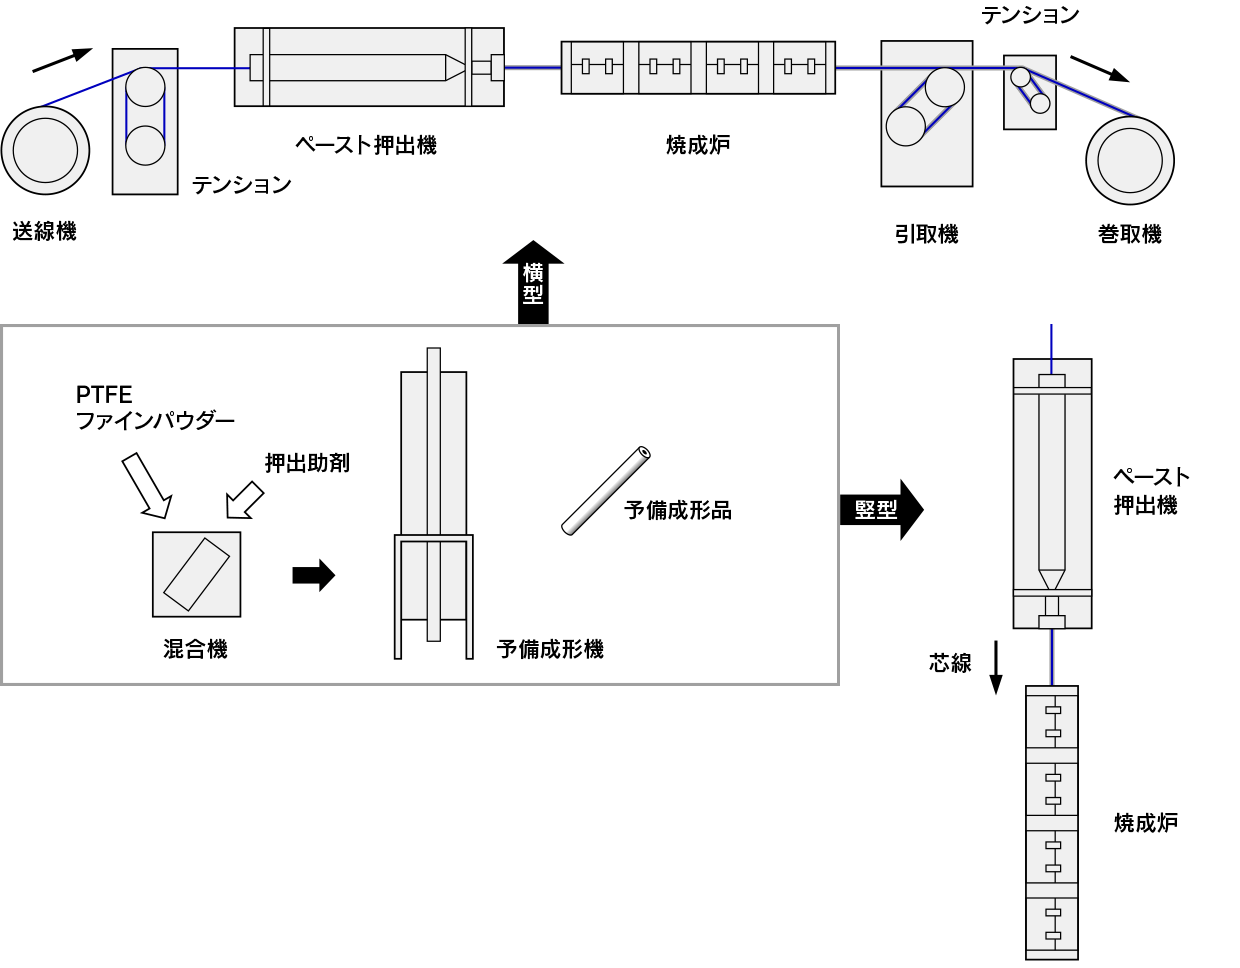 田端機械工業 フッ素樹脂 (PTFE) 成形装置 電線被覆成形装置の概要 模式図